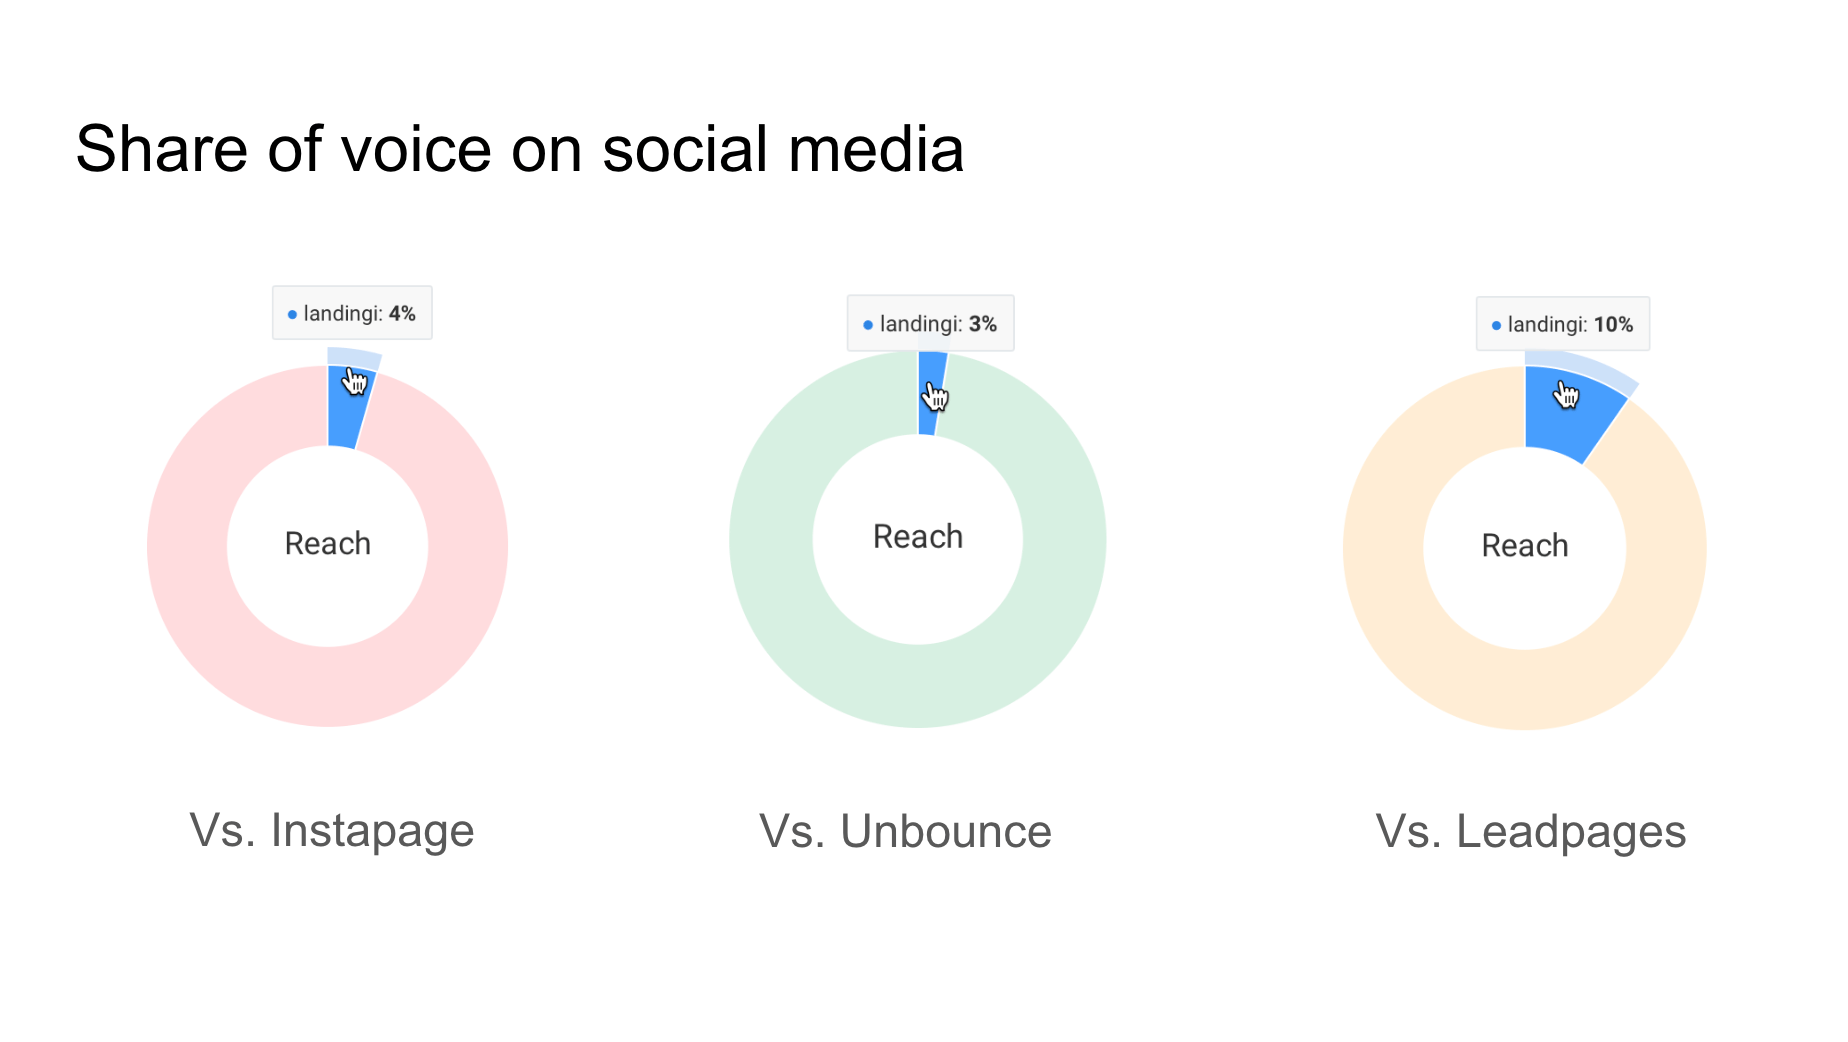  Slide 4 — share of voice on social media.